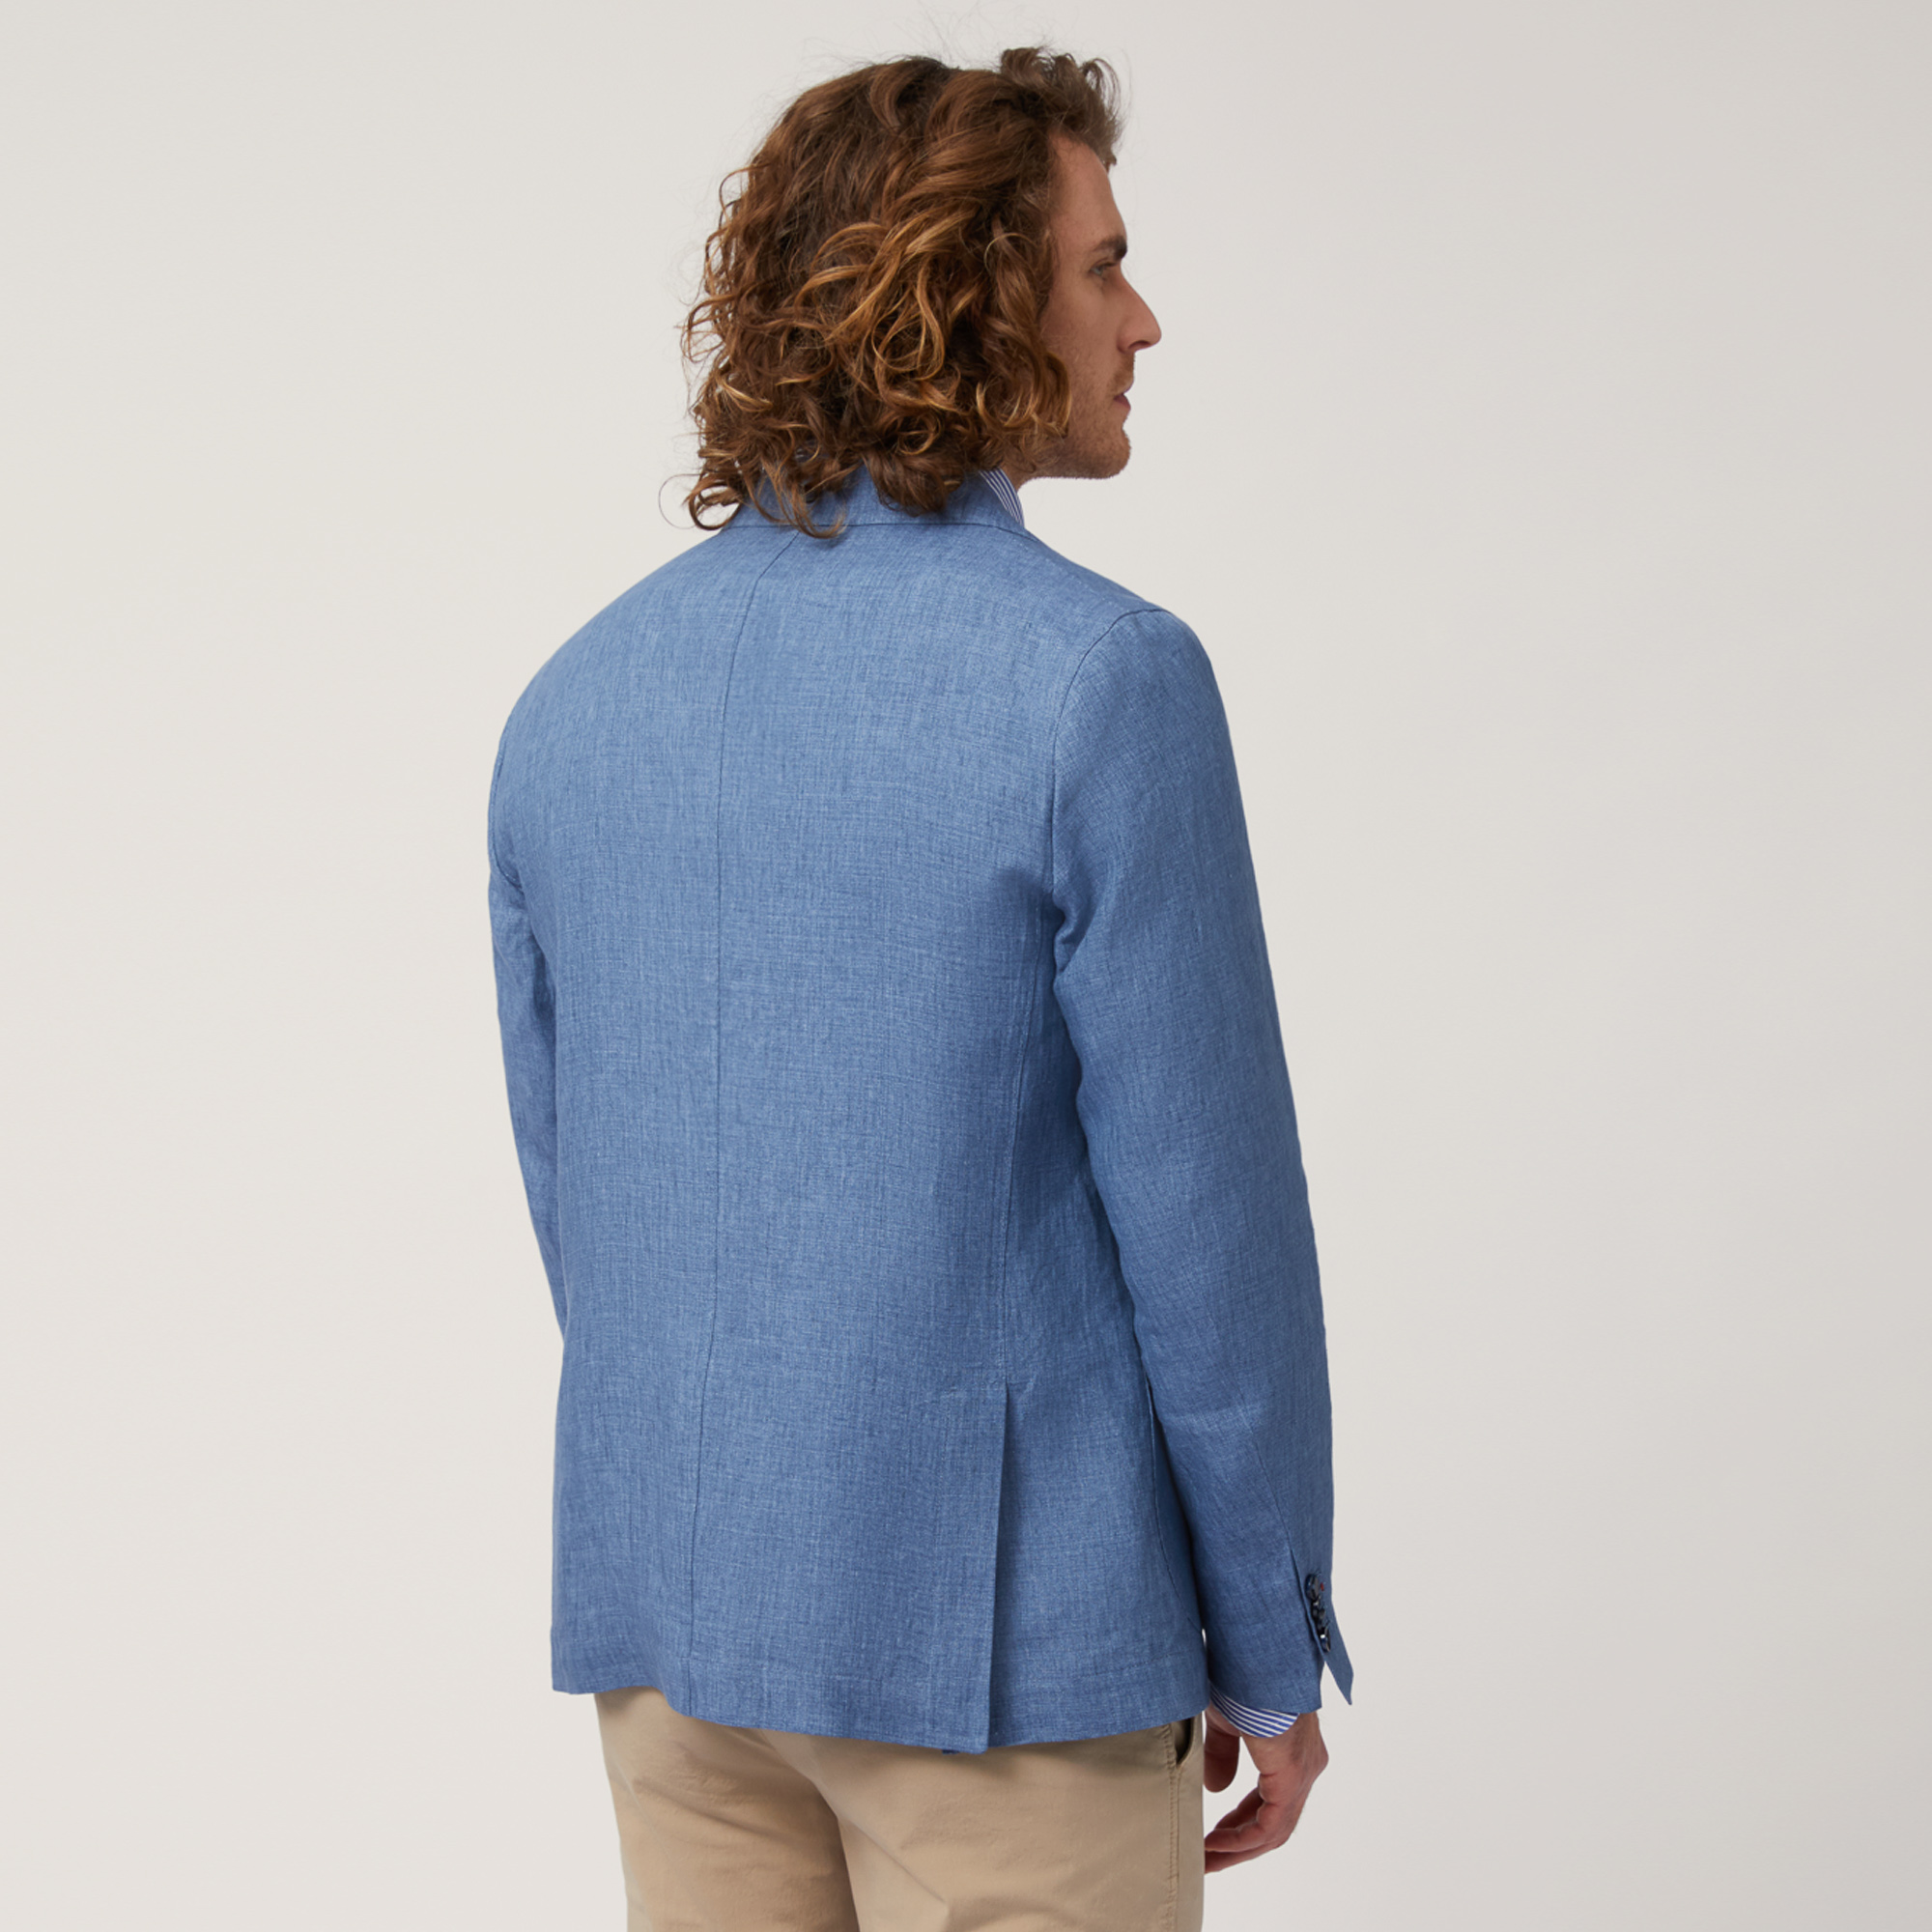 Linen Jacket with Pockets, Blue, large image number 1